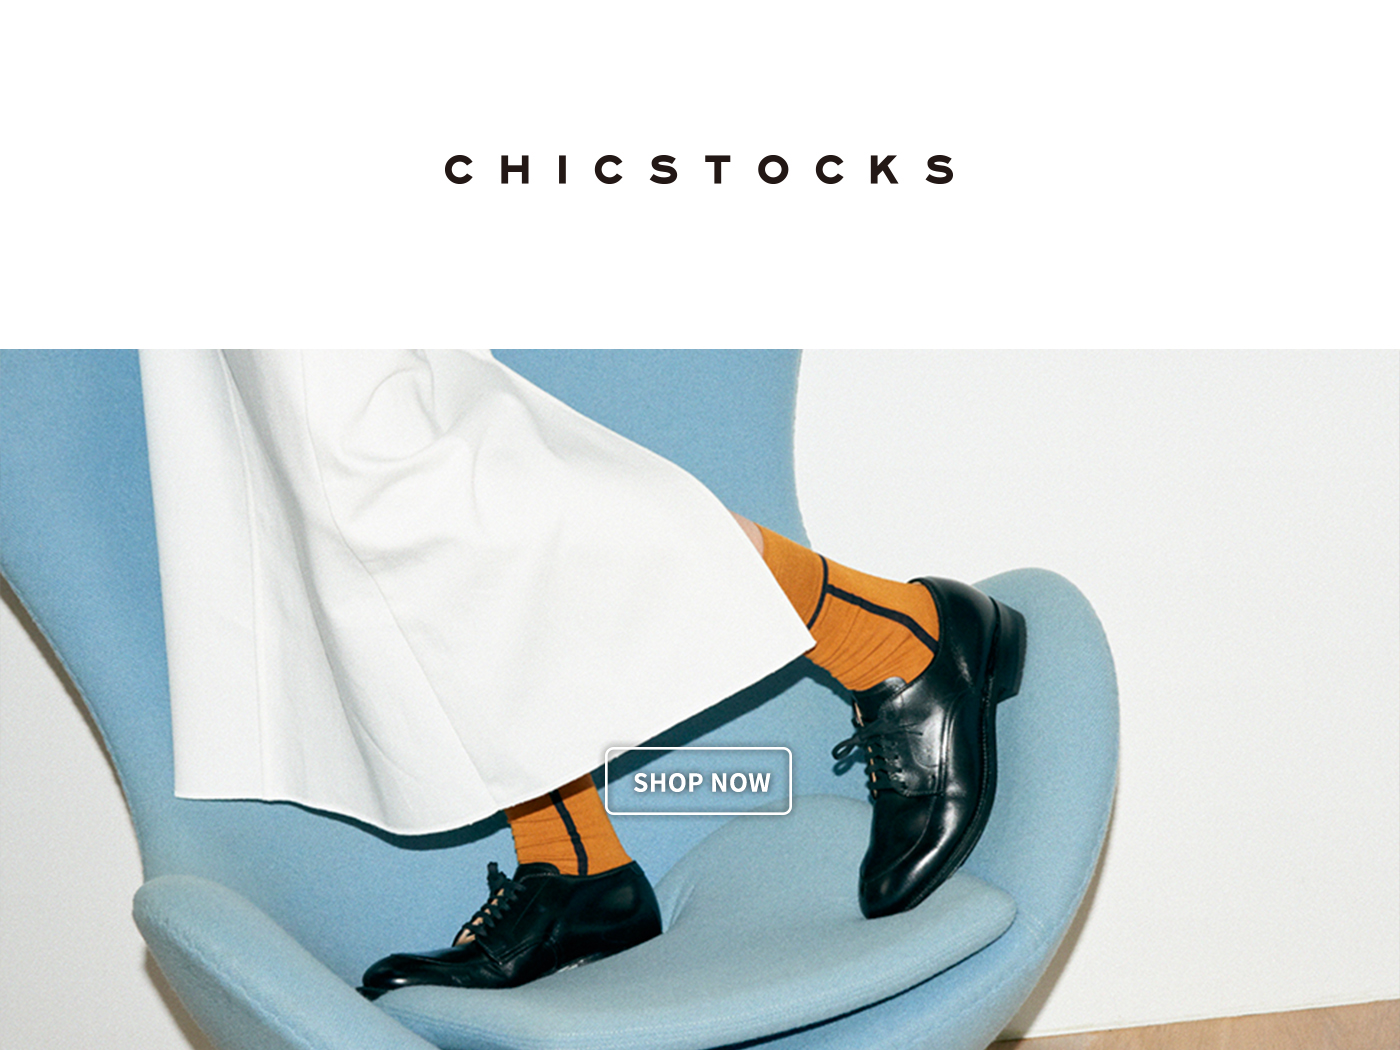 chicstocks,chicstocks 通販,chicstocks 襪,襪子,長襪,chicstocks 靴下,chicstocks socks,chicstocks セール,chicstocks 台灣,皮鞋,長襪